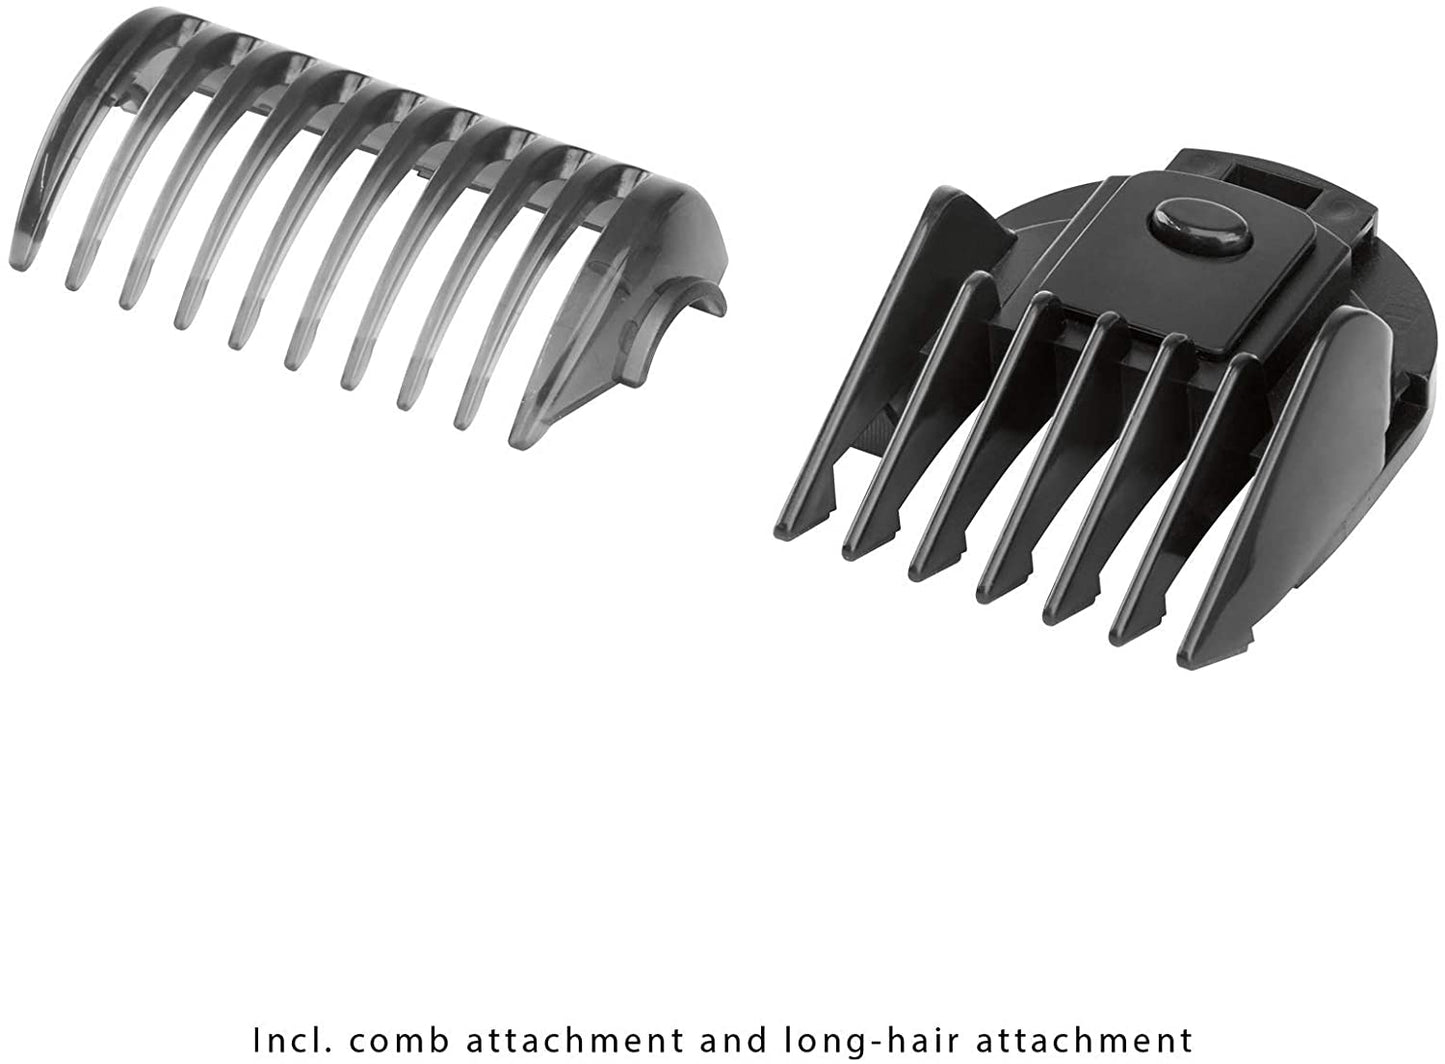 Proficare BHT3015 Body Groomer / Hair Trimmer Set